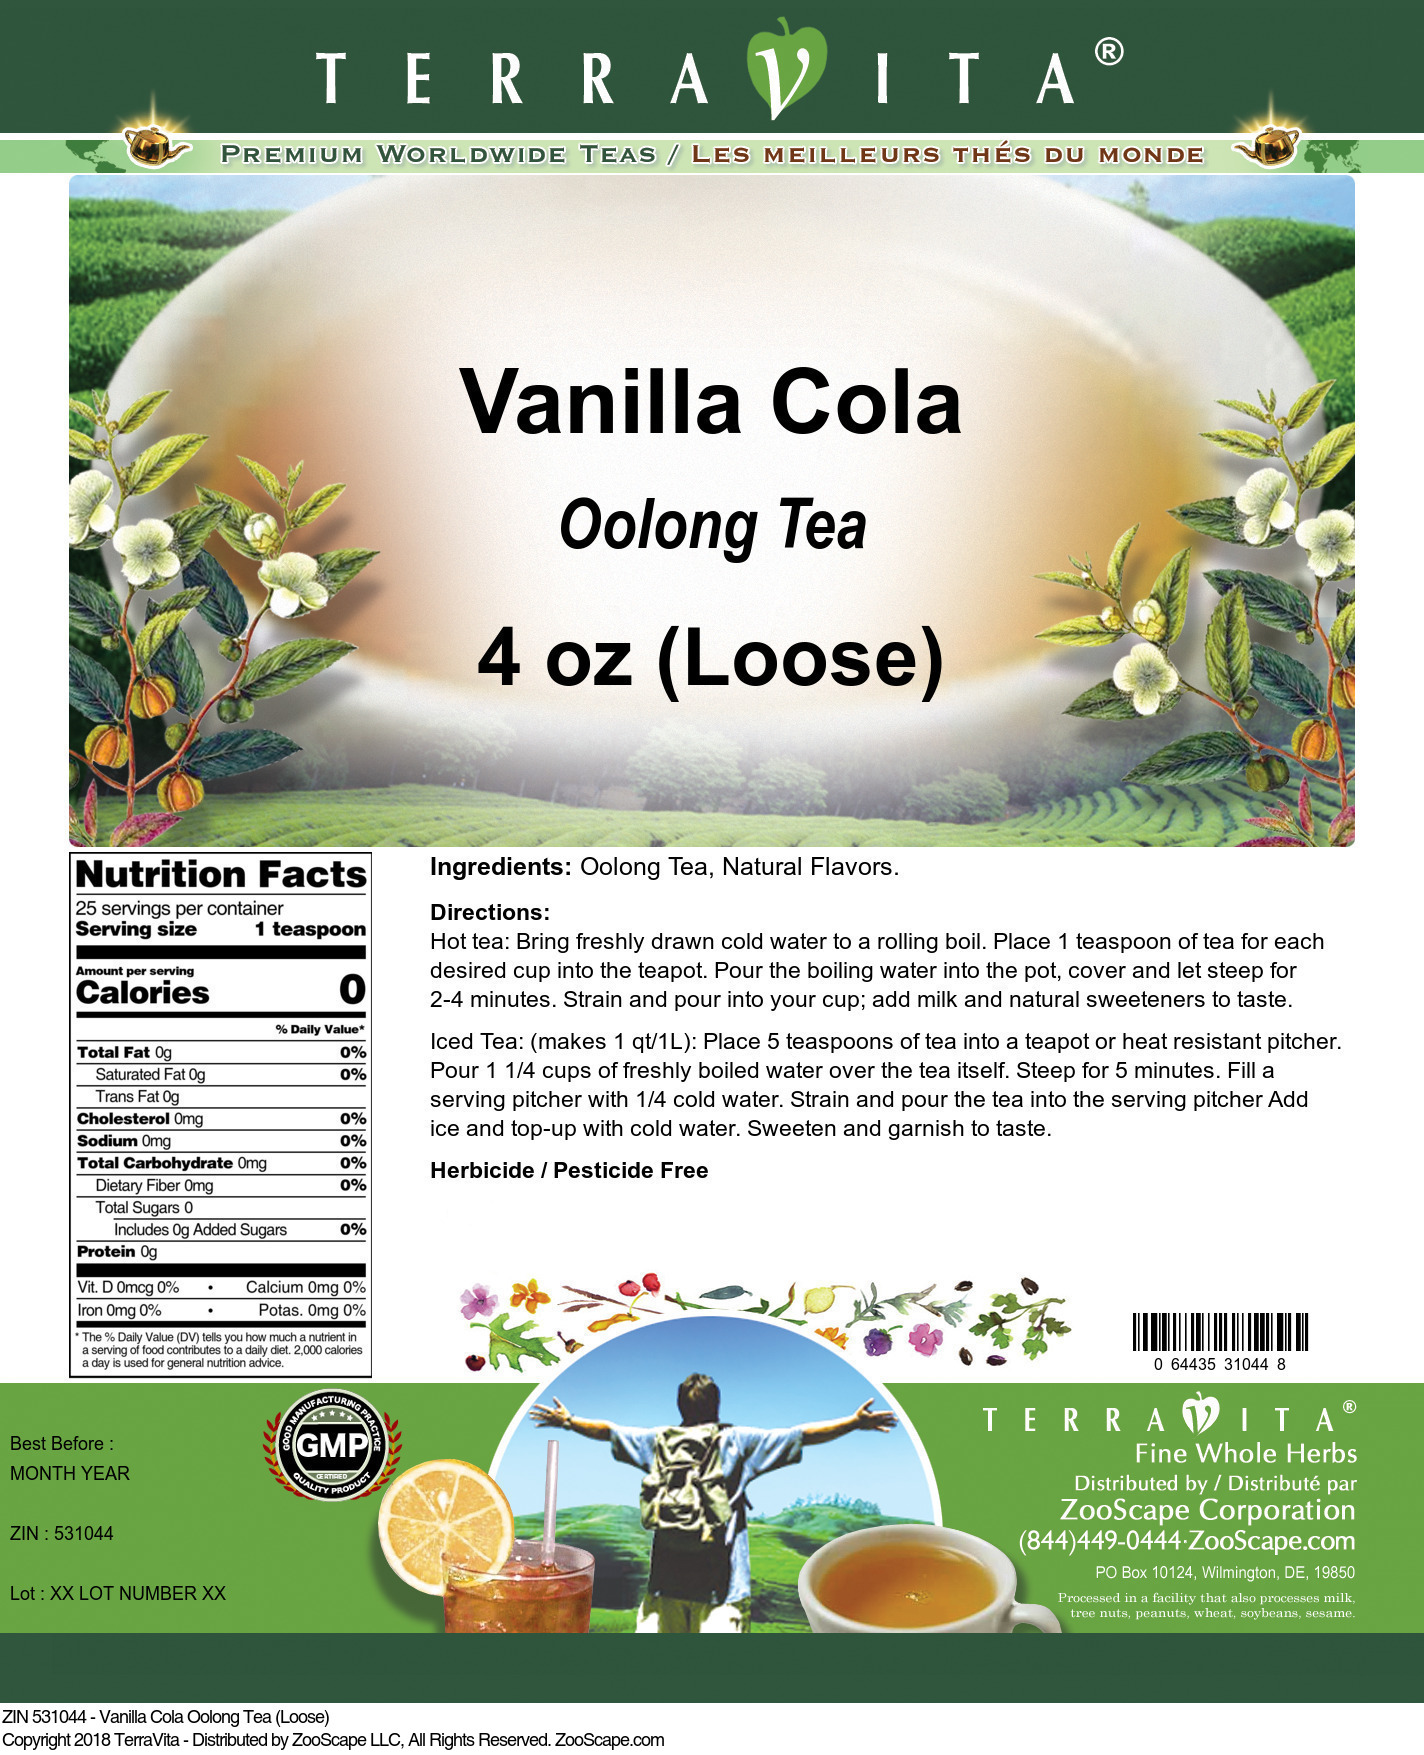 Vanilla Cola Oolong Tea (Loose) - Label